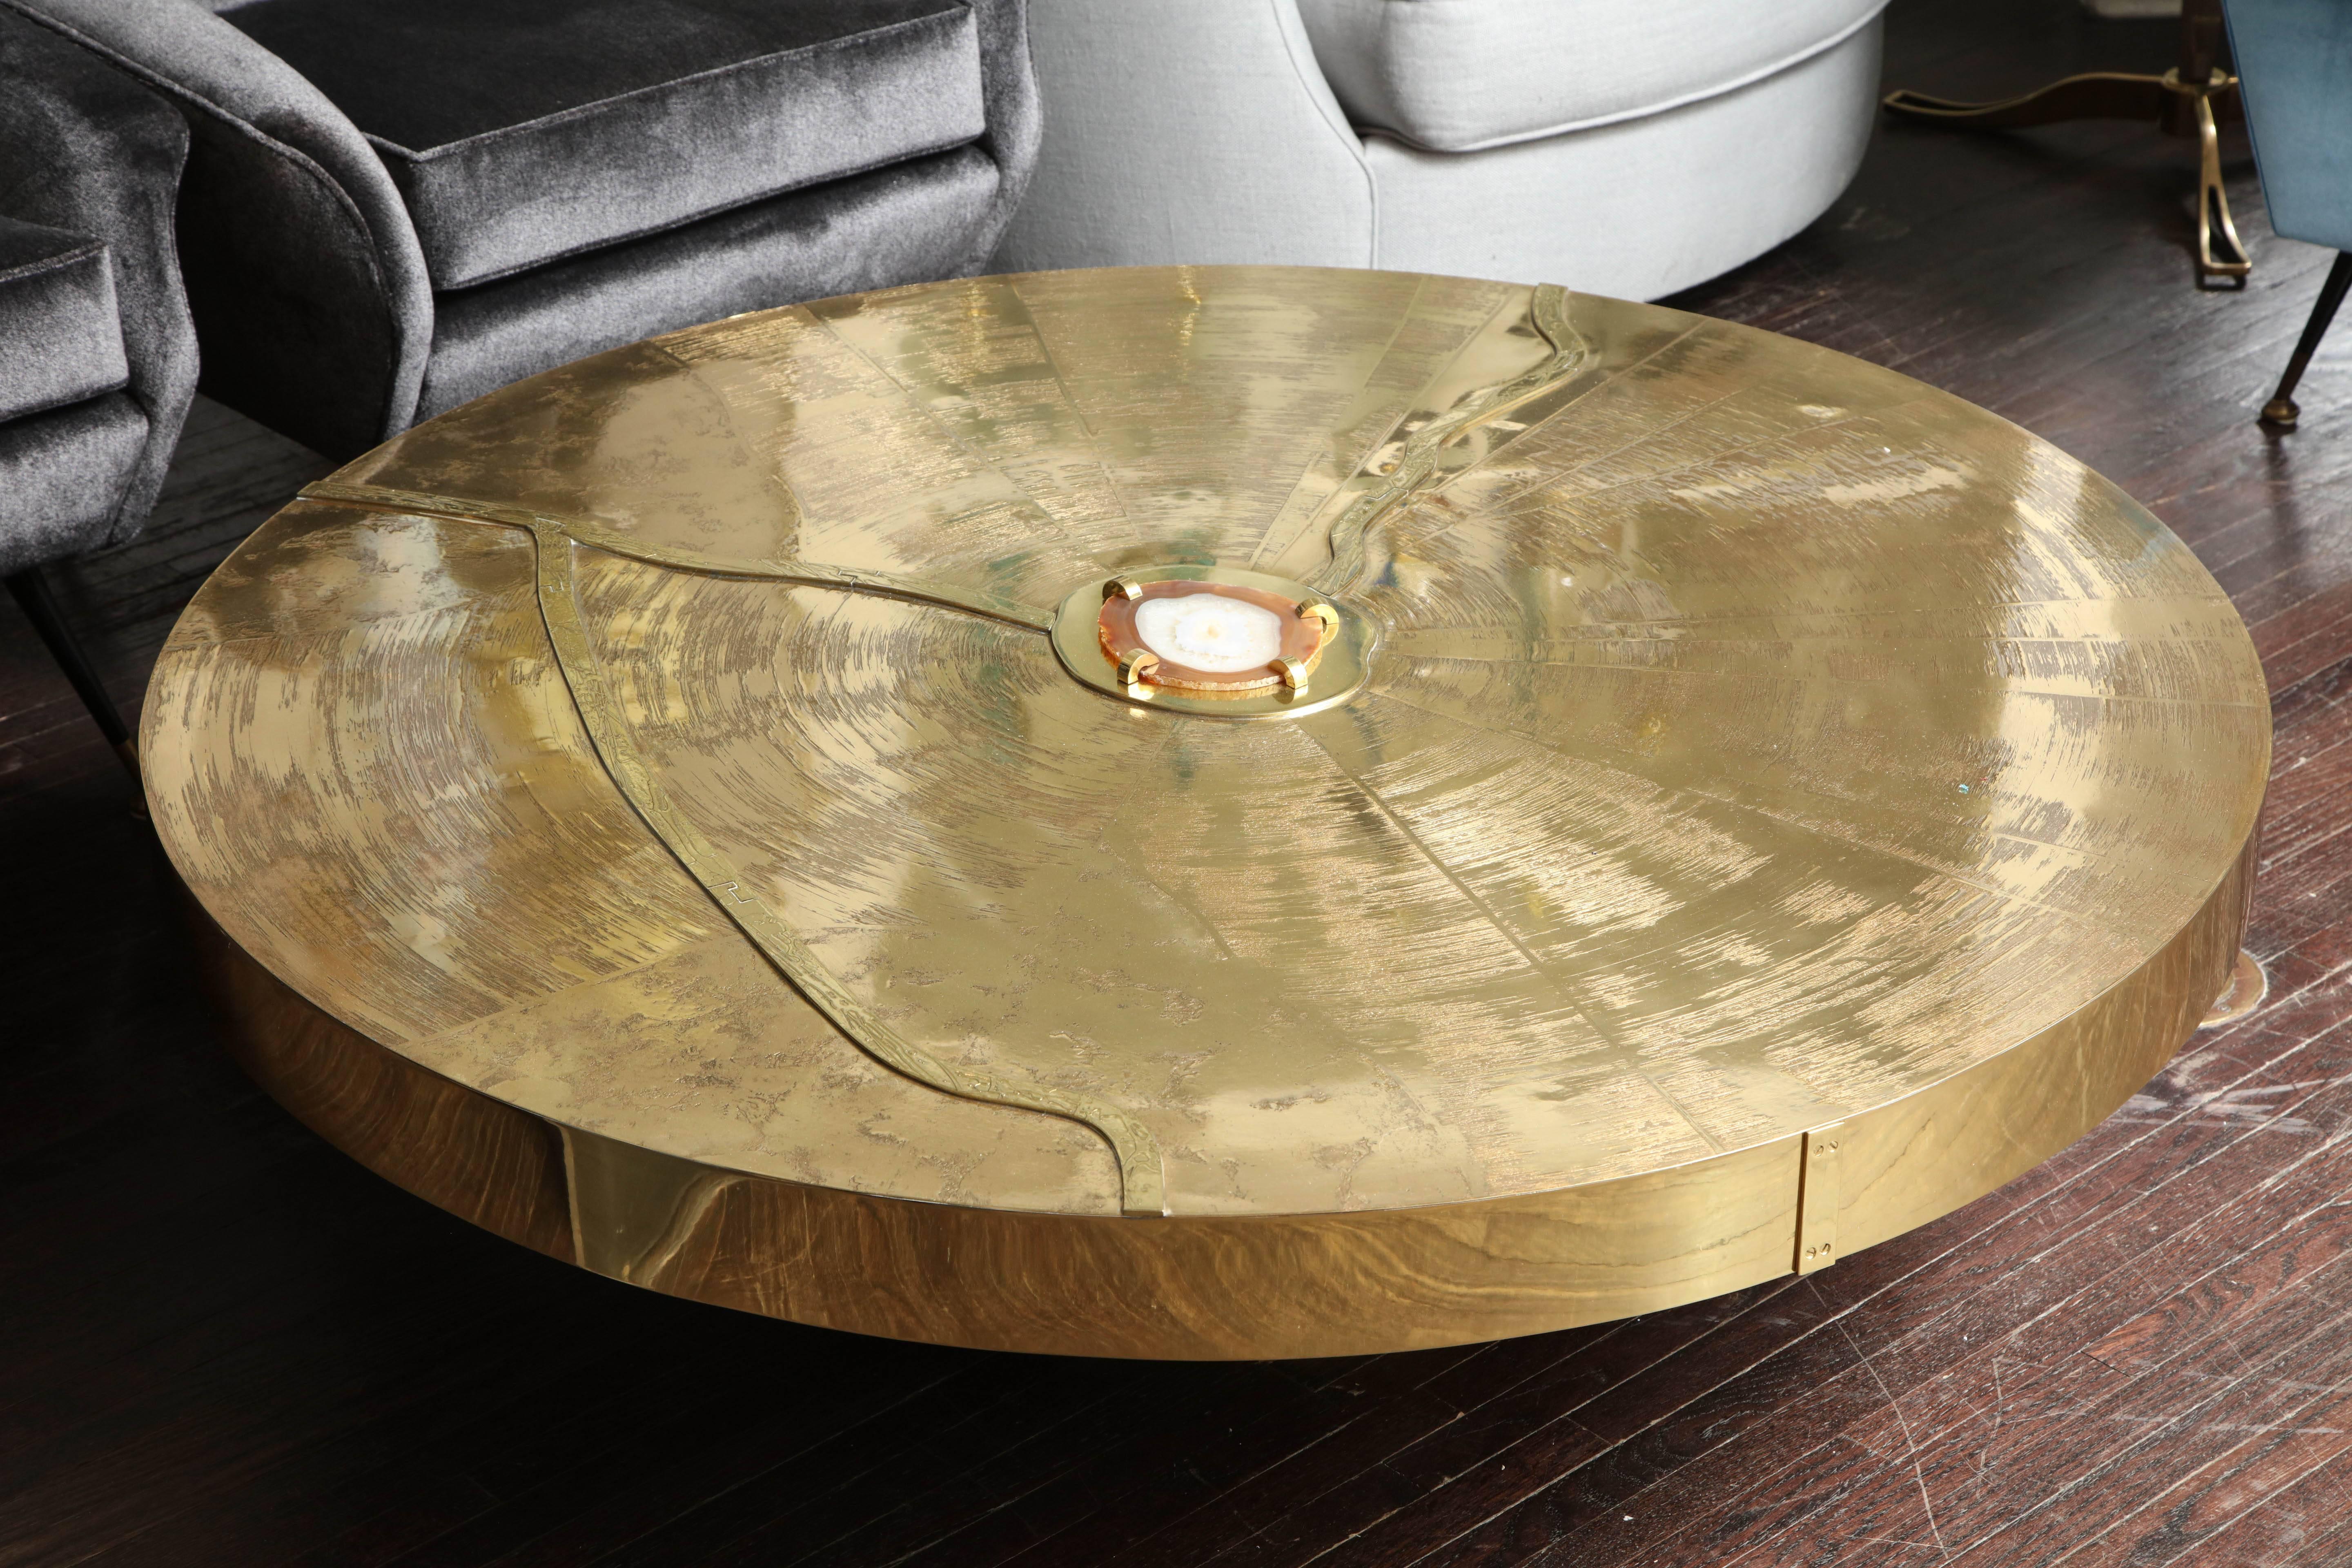 Custom Spektakuläre runde geätzte Messing-Cocktail-Tabelle mit Achat Stein. Es gibt verschiedene Größen, Achate, Oberflächen und Farben für den Tischsockel, die individuell angepasst werden können.